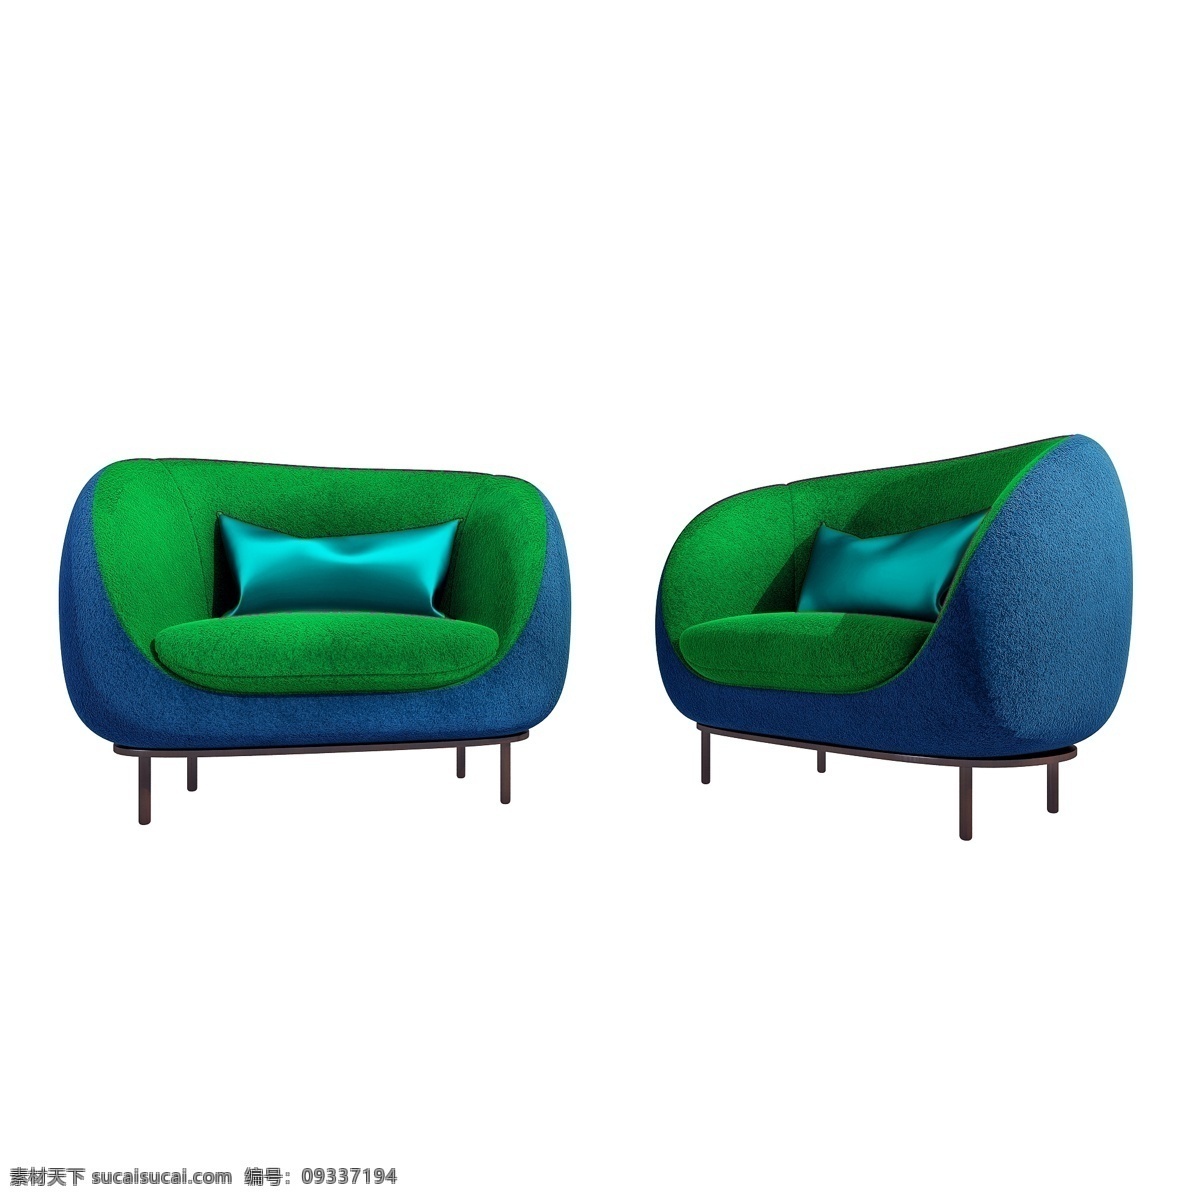 立体 绒布 椅子 图 舒适 精致 3d 休闲椅 翻毛皮 质感 仿真 沙发 创意 套图 png图